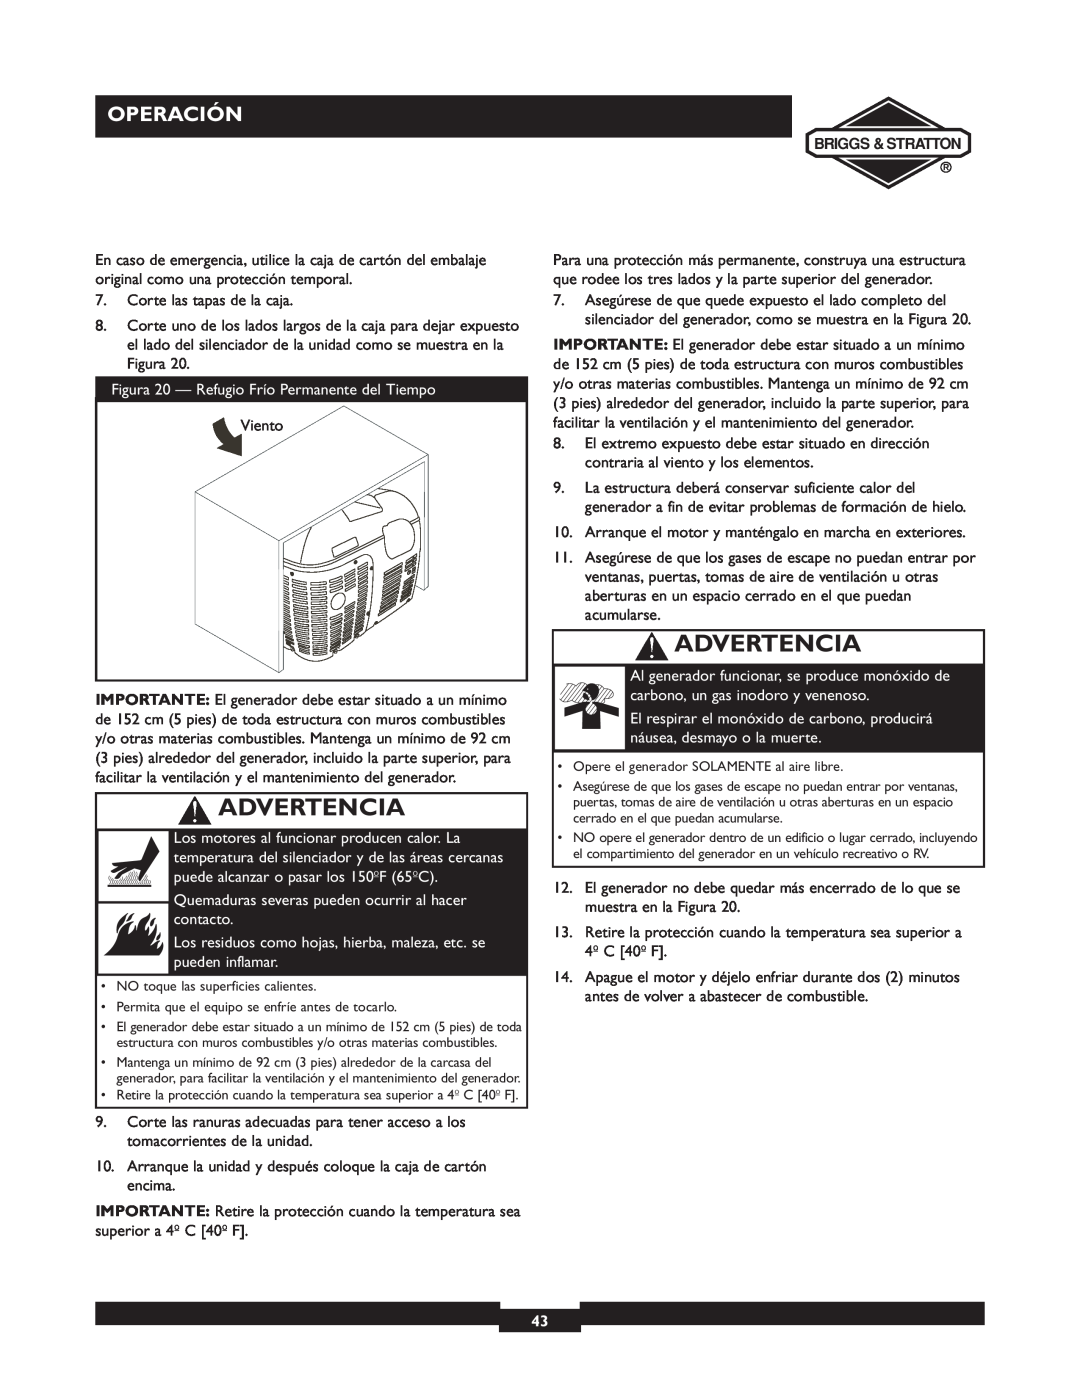 Briggs & Stratton 01532-4 owner manual Advertencia, Operación, Figura 20 - Refugio Frío Permanente del Tiempo 